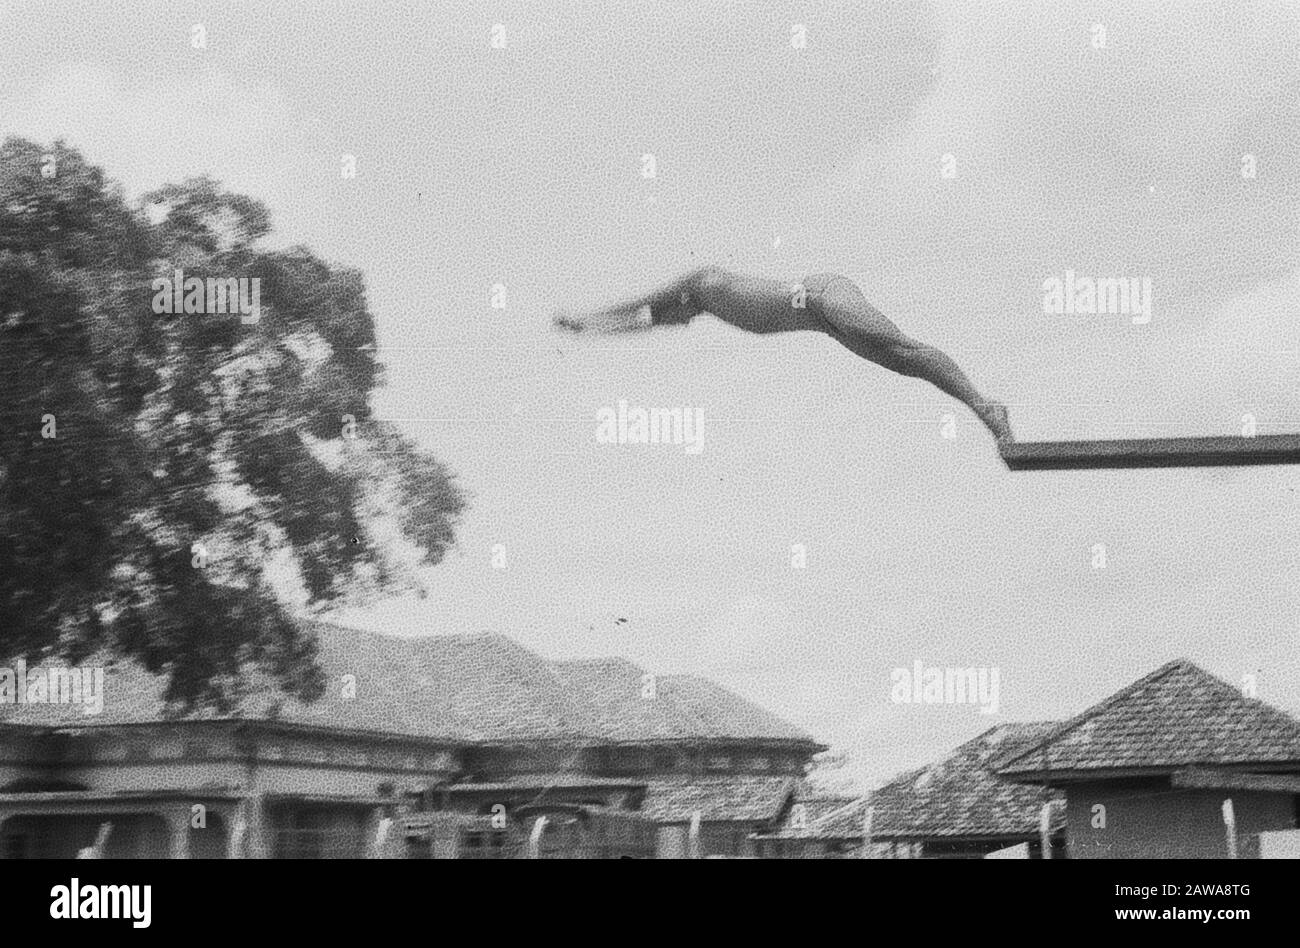 Homme sautant de plongée Date: Octobre 1947 lieu: Indonésie, Hollandais East Indies, Palembang, Sumatra Banque D'Images